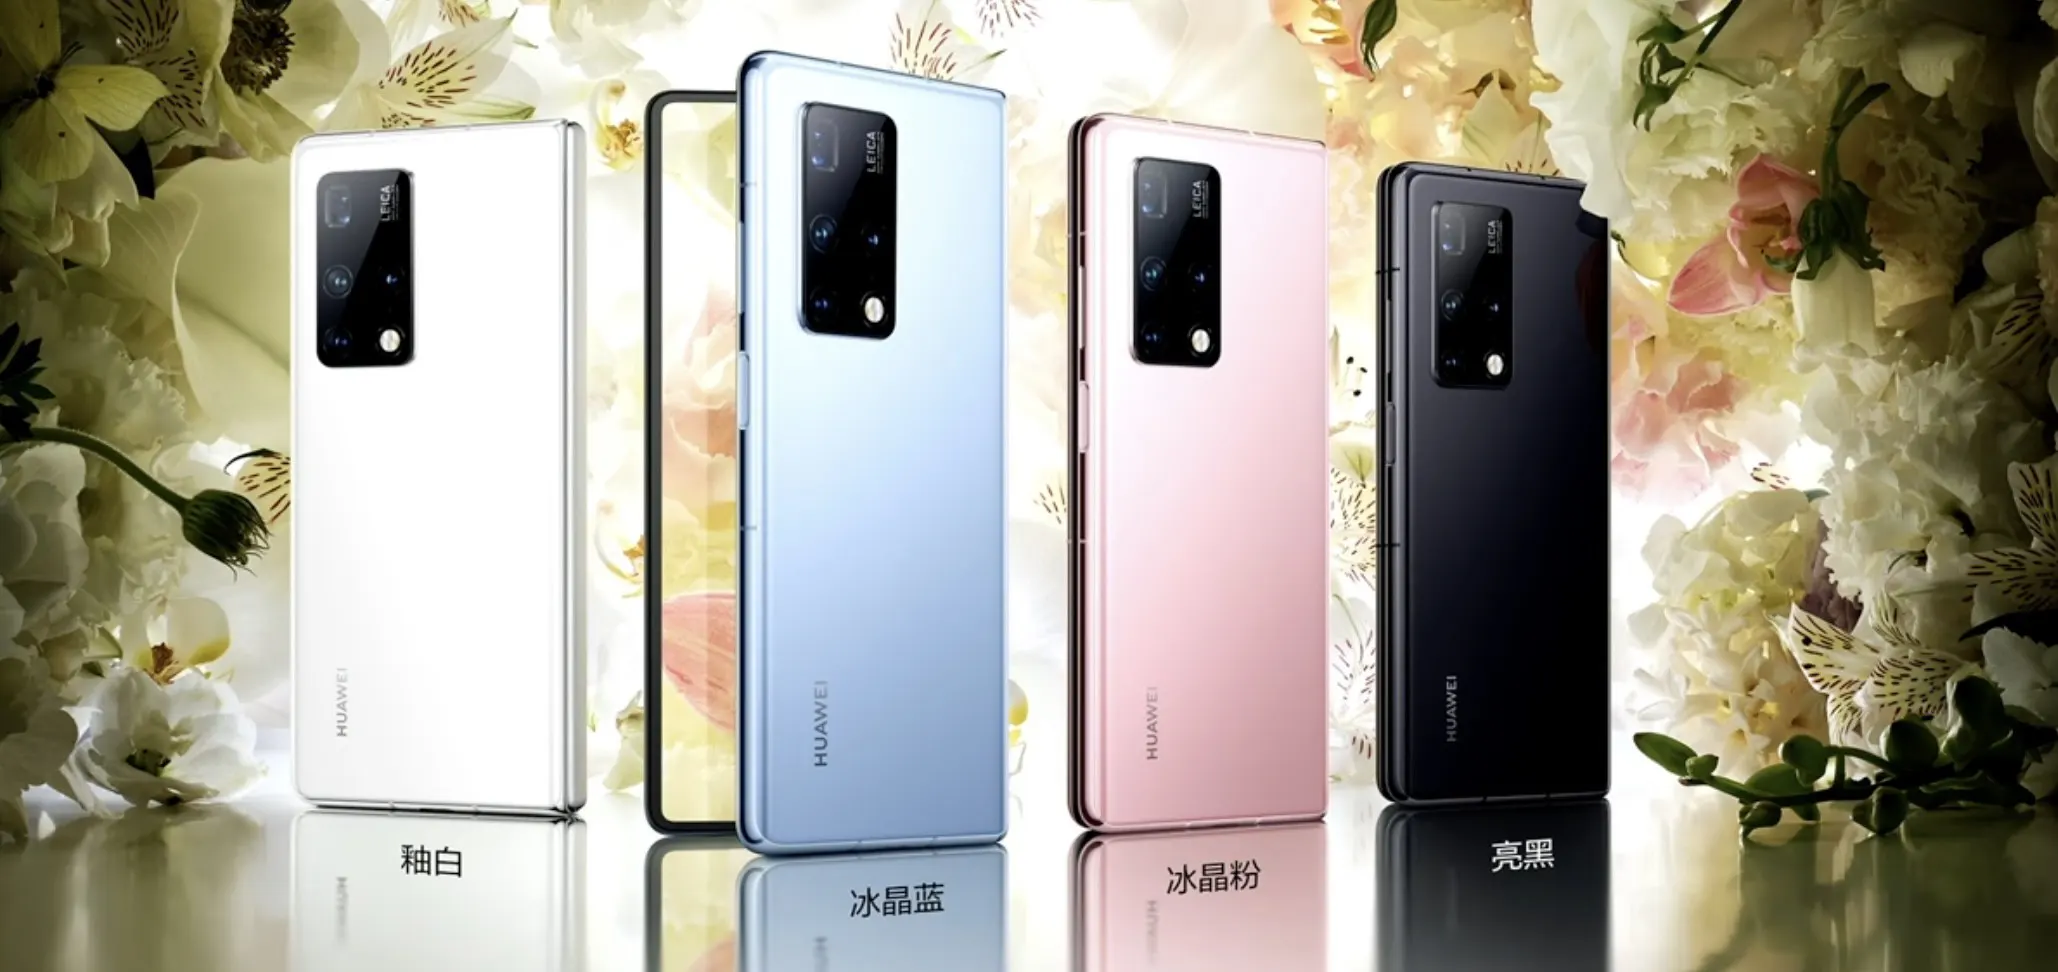 Huawei Mate X2 ra mắt
với thiết kế tương tự như Galaxy Z Fold2 nhưng giá còn cao
hơn